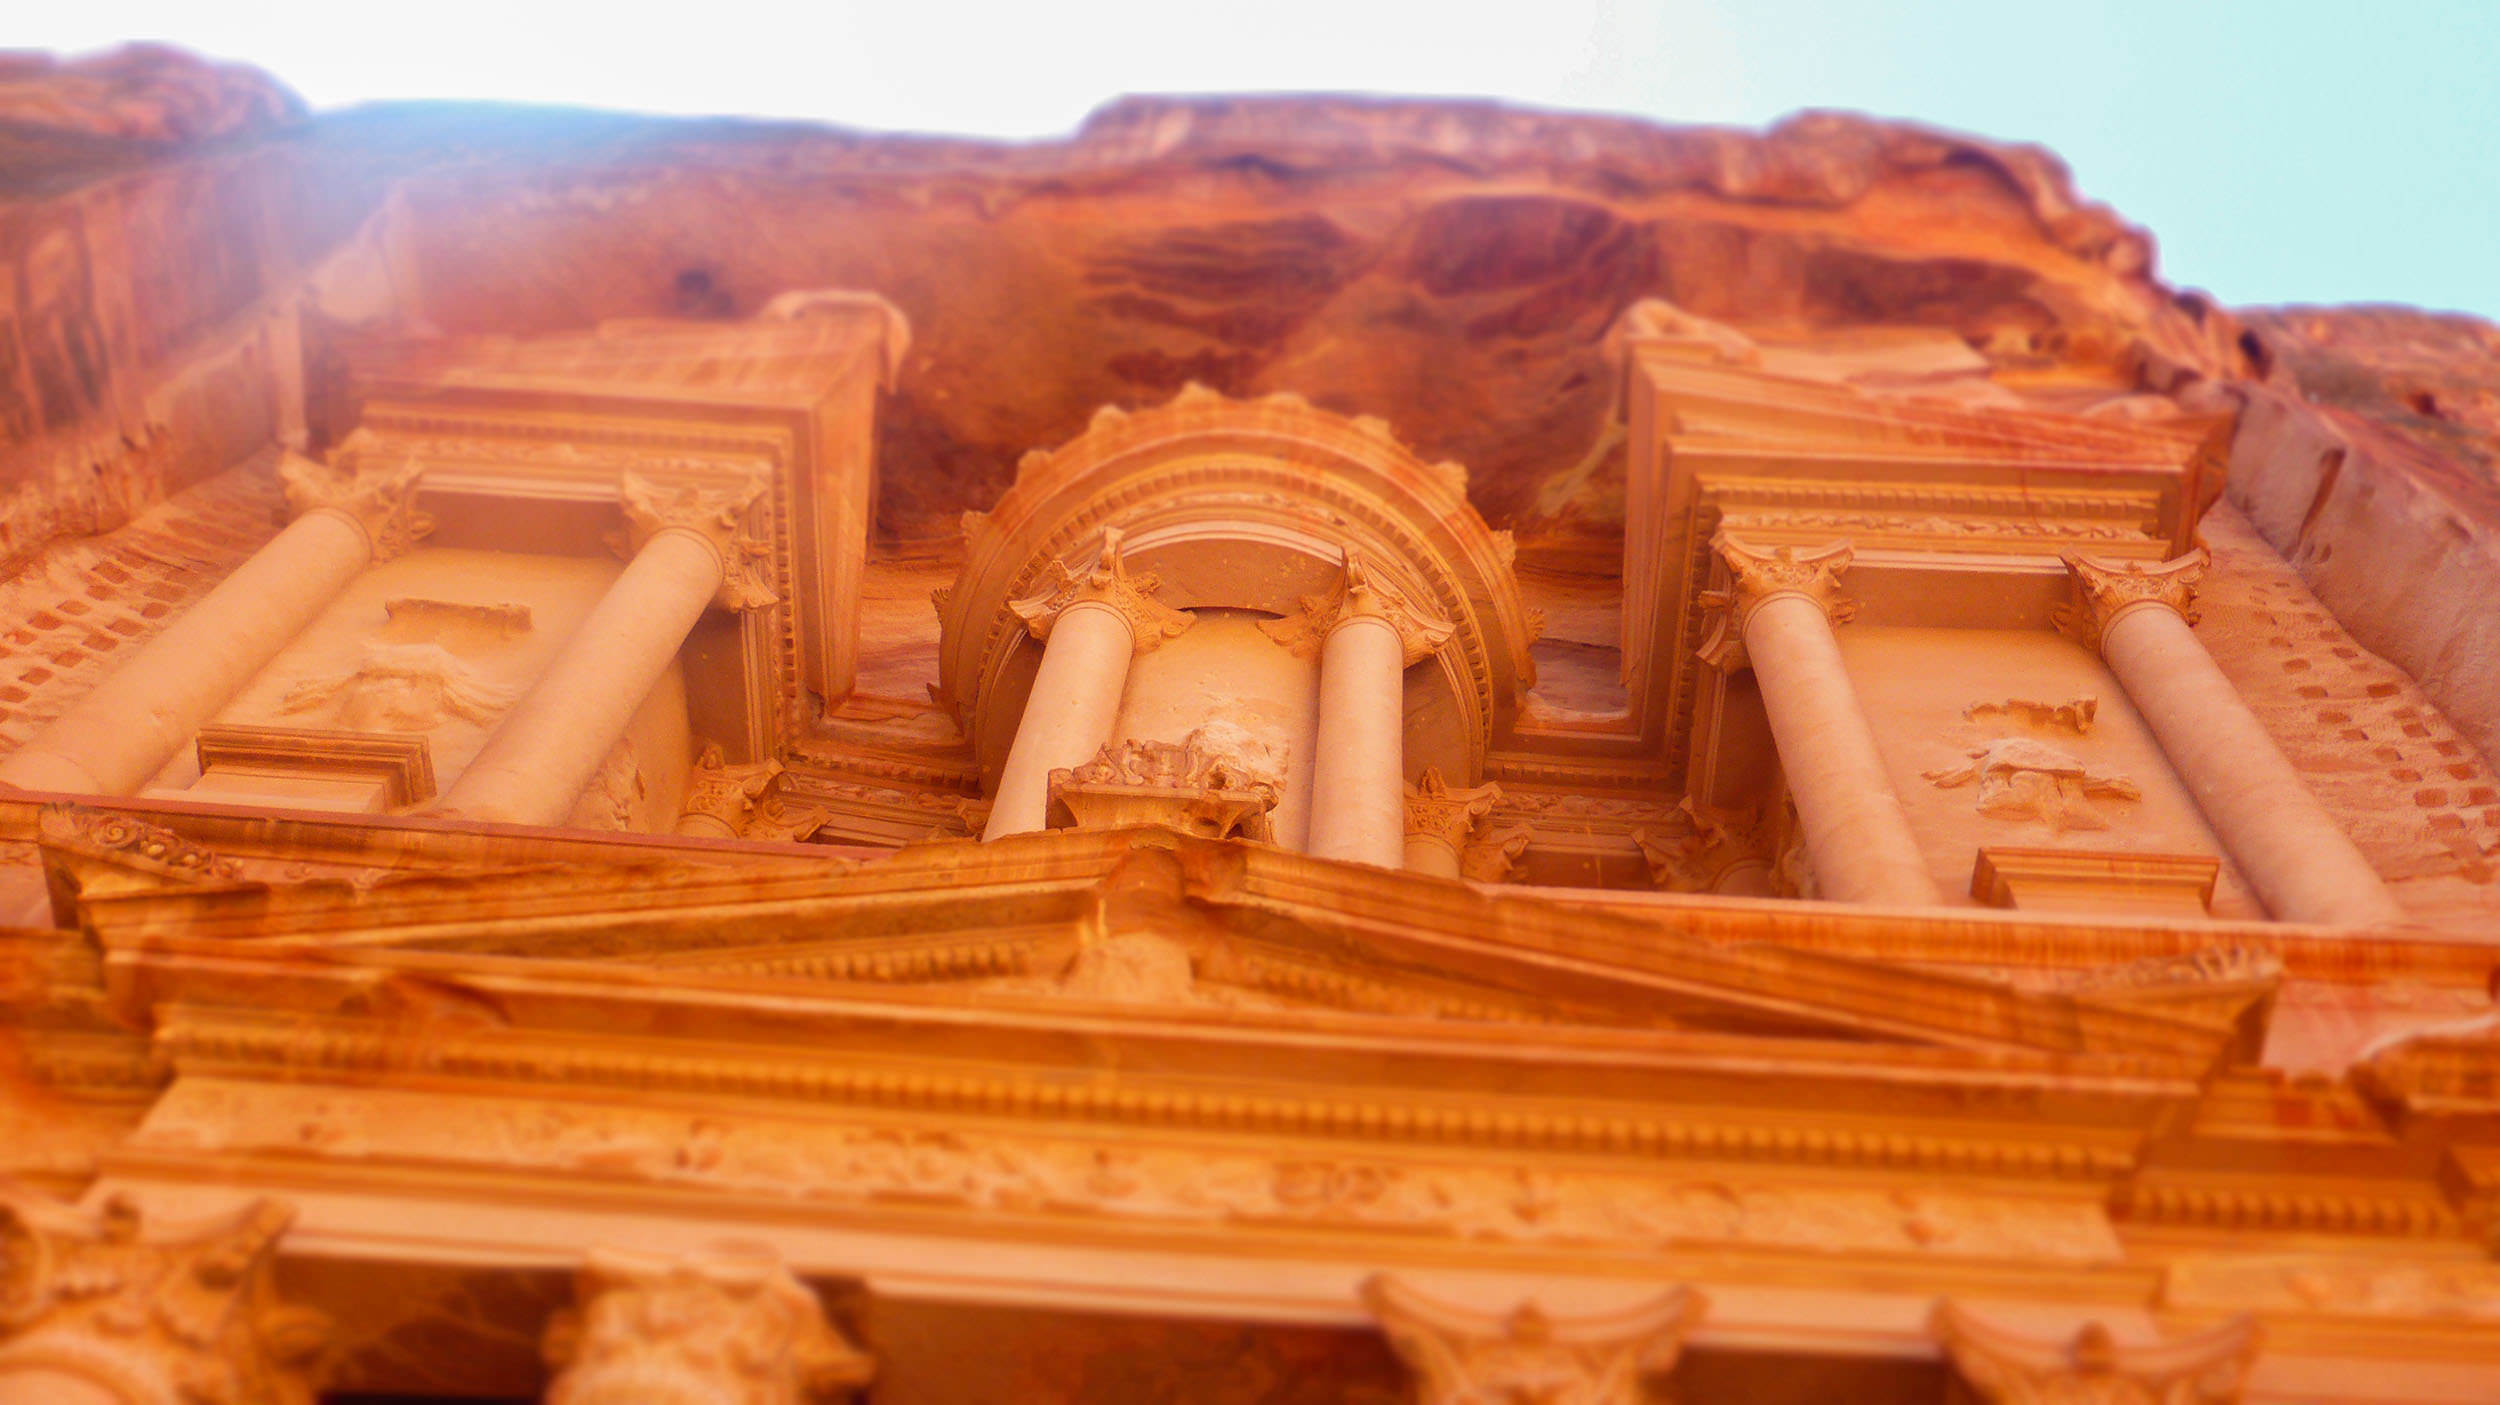 A facade inside Petra Jordan